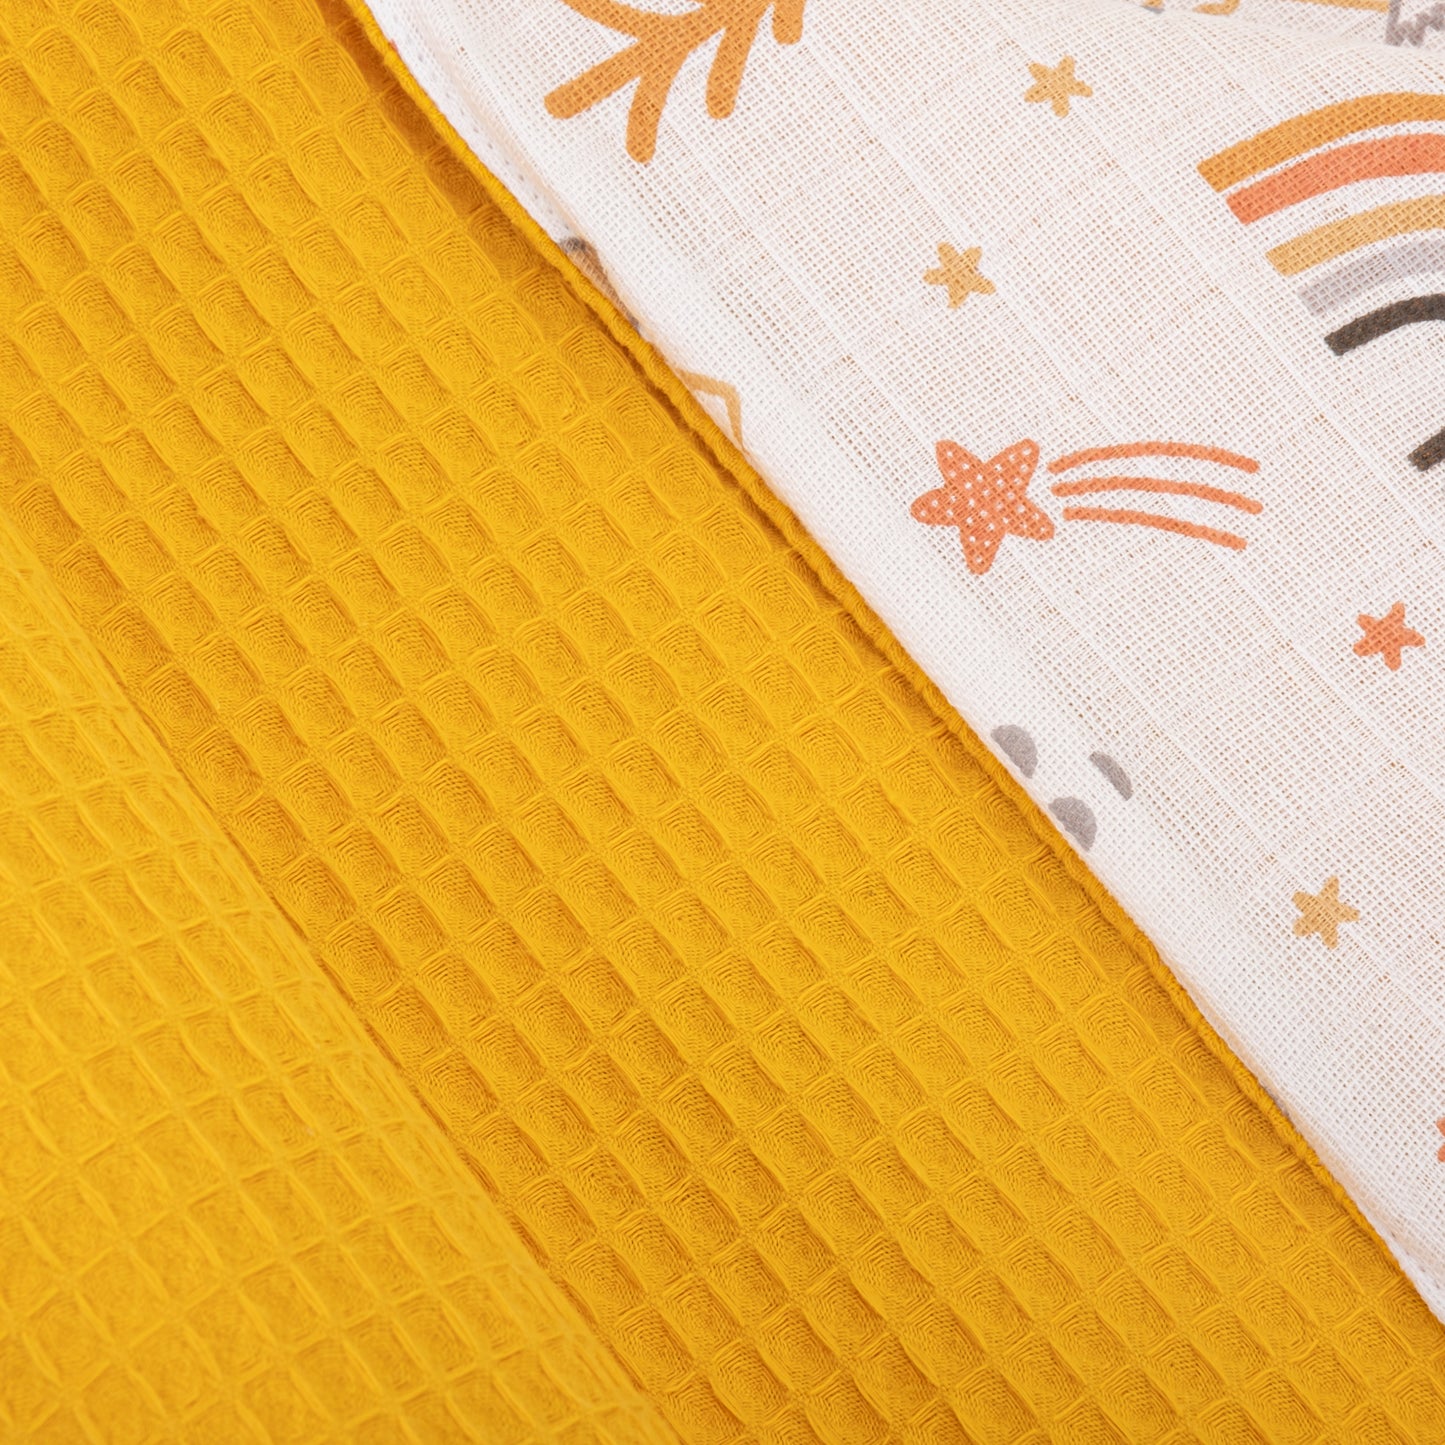 Pique Blanket - Double Side - Mustard Honeycomb - Orange Comet